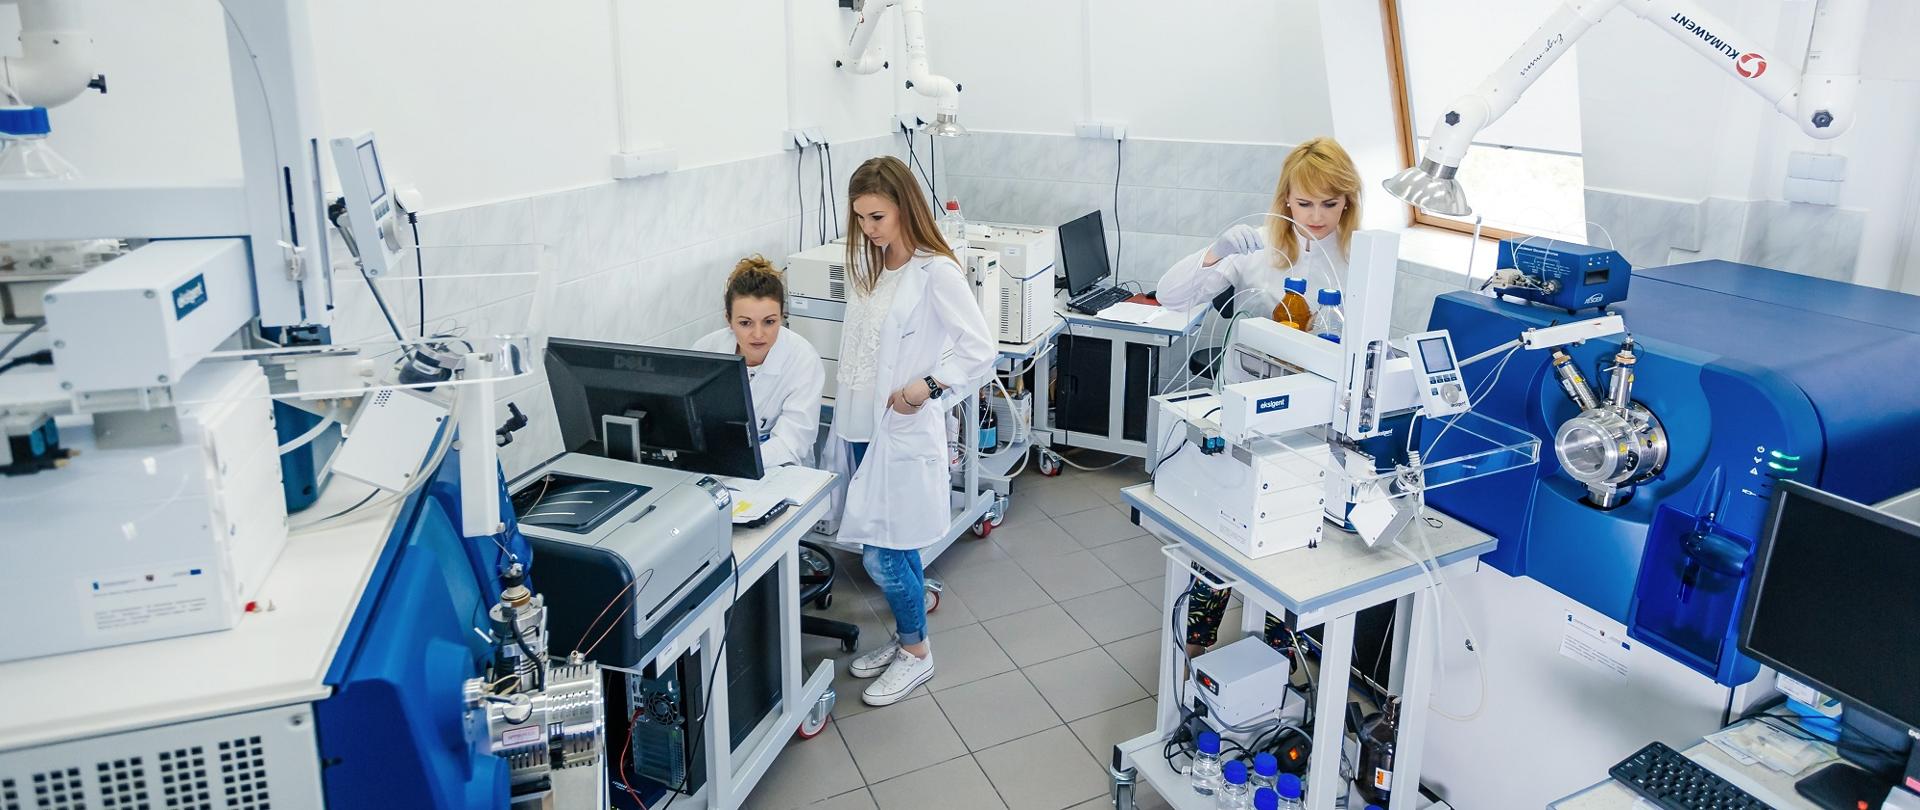 Na zdjęciu trzy kobiety w białych fartuchach w laboratorium.